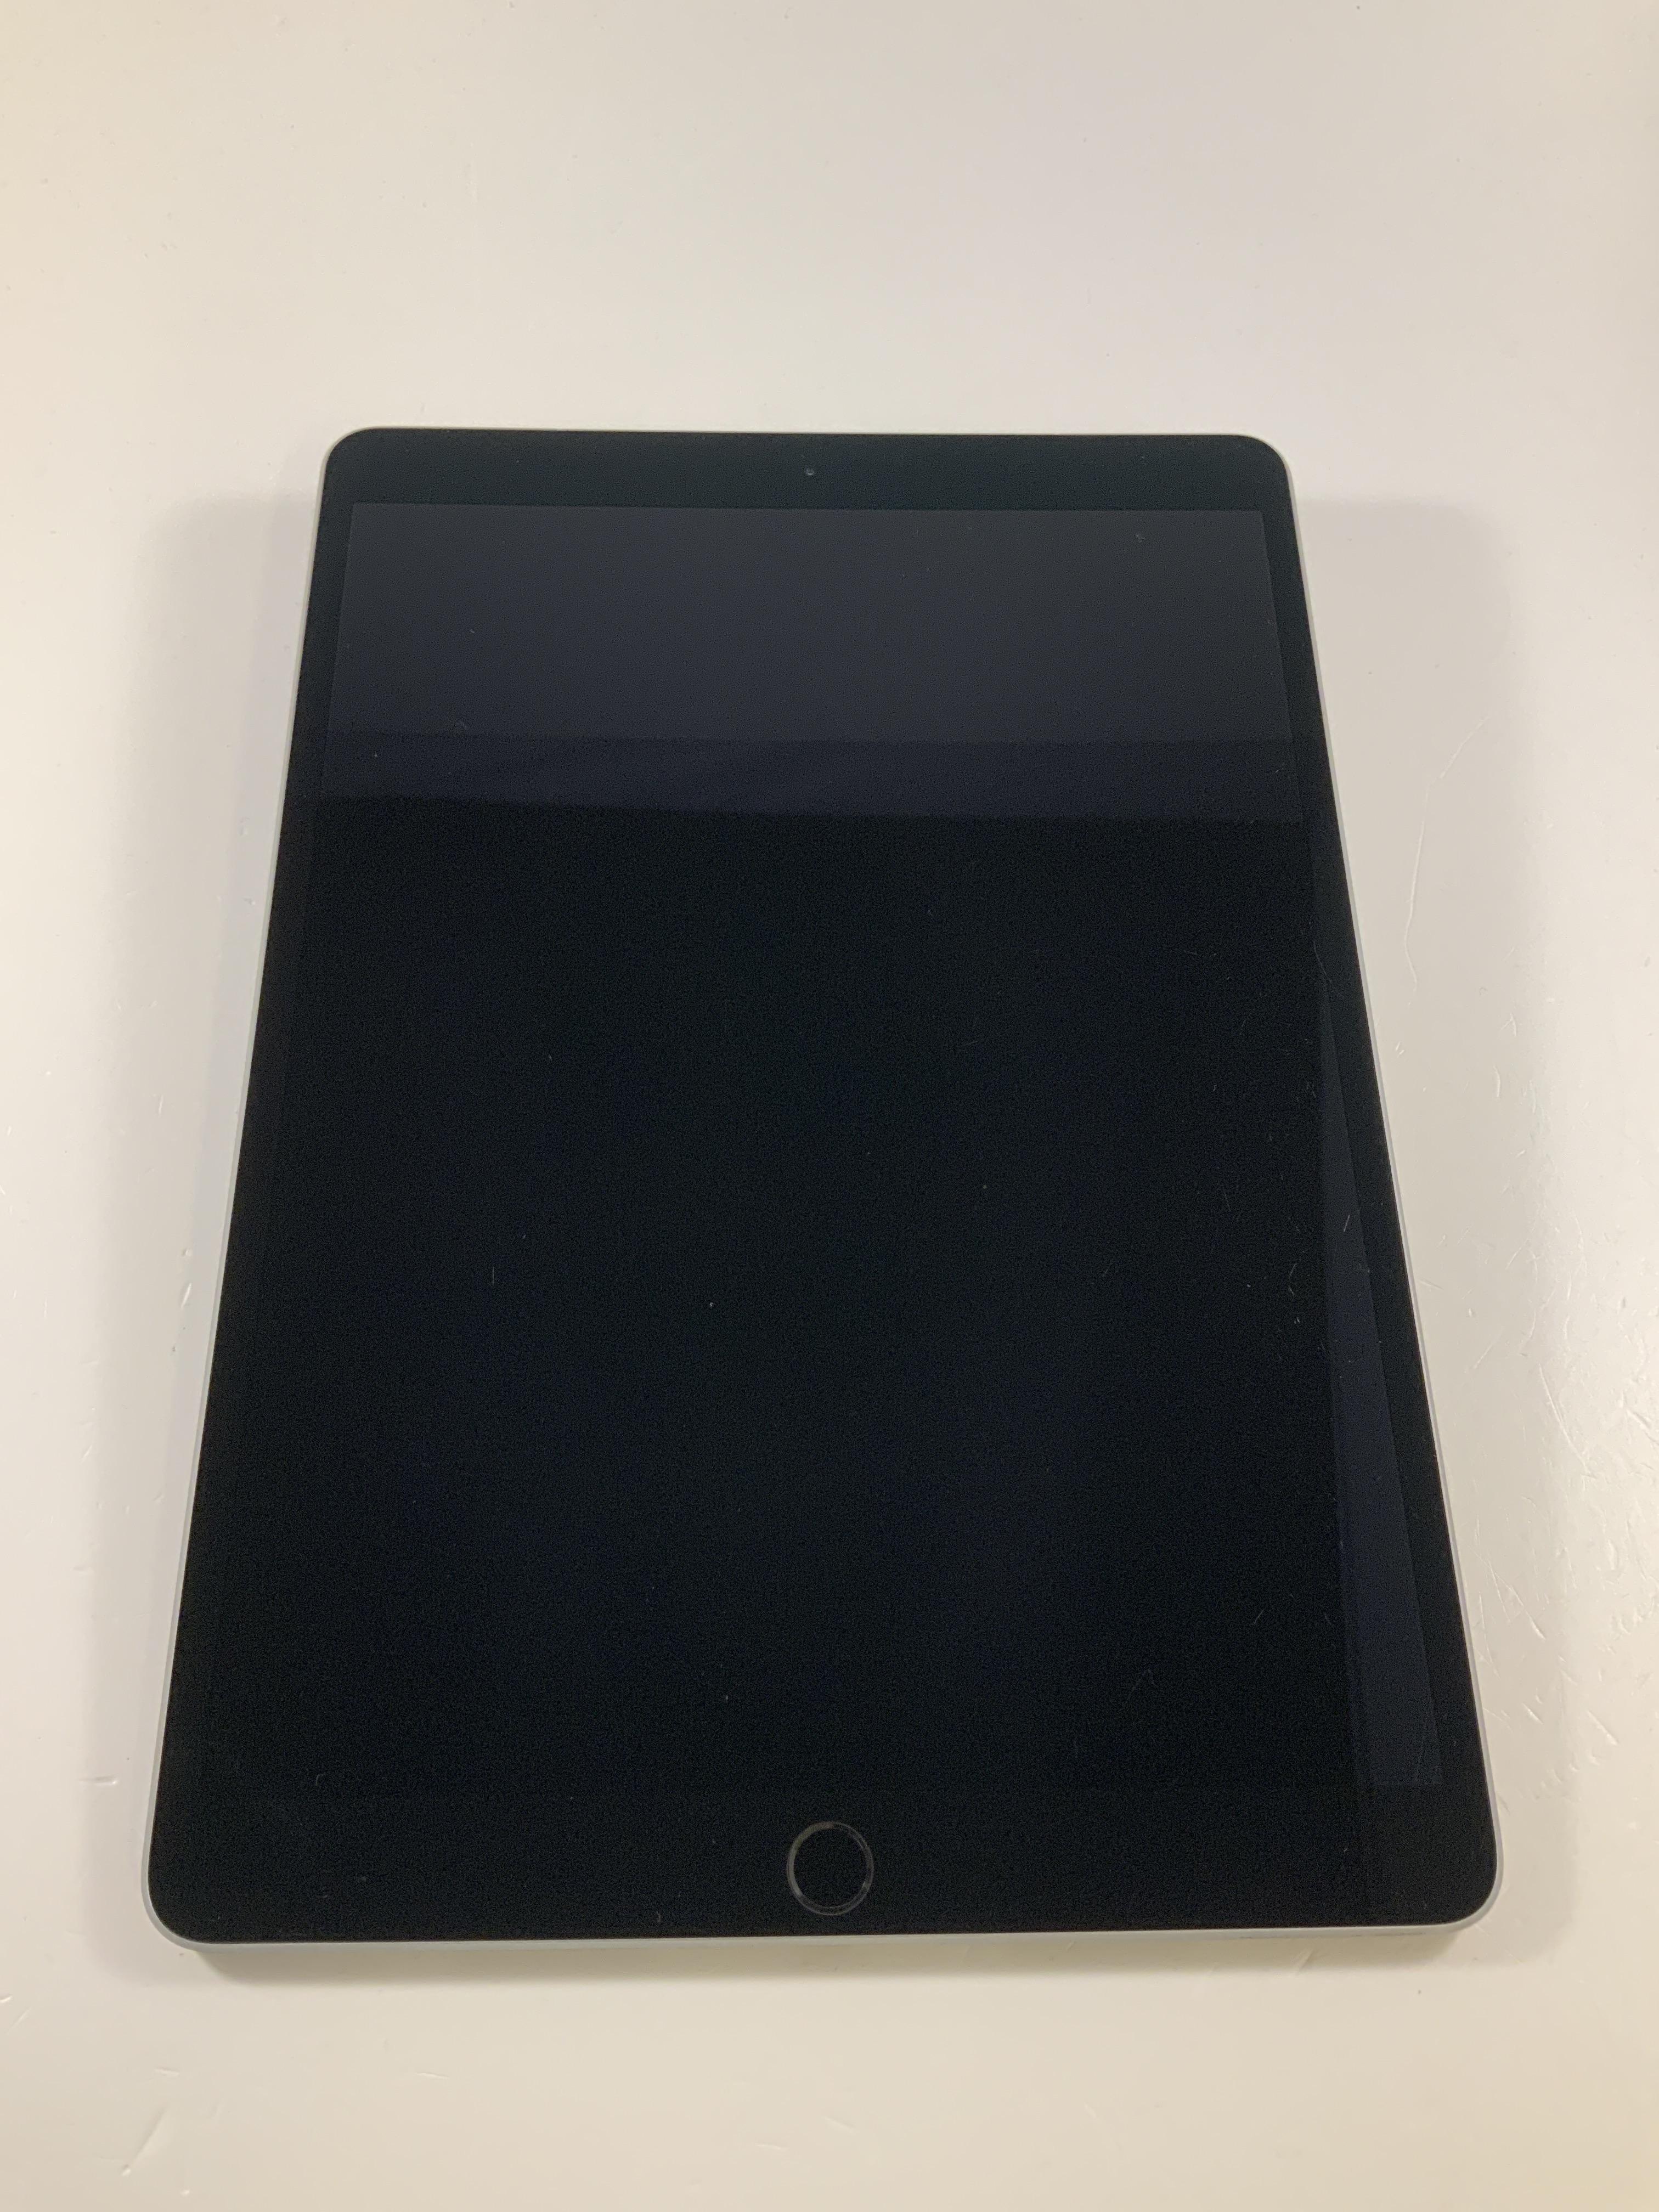 iPad Pro 10.5" Wi-Fi + Cellular 64GB, 64GB, Space Gray, image 1